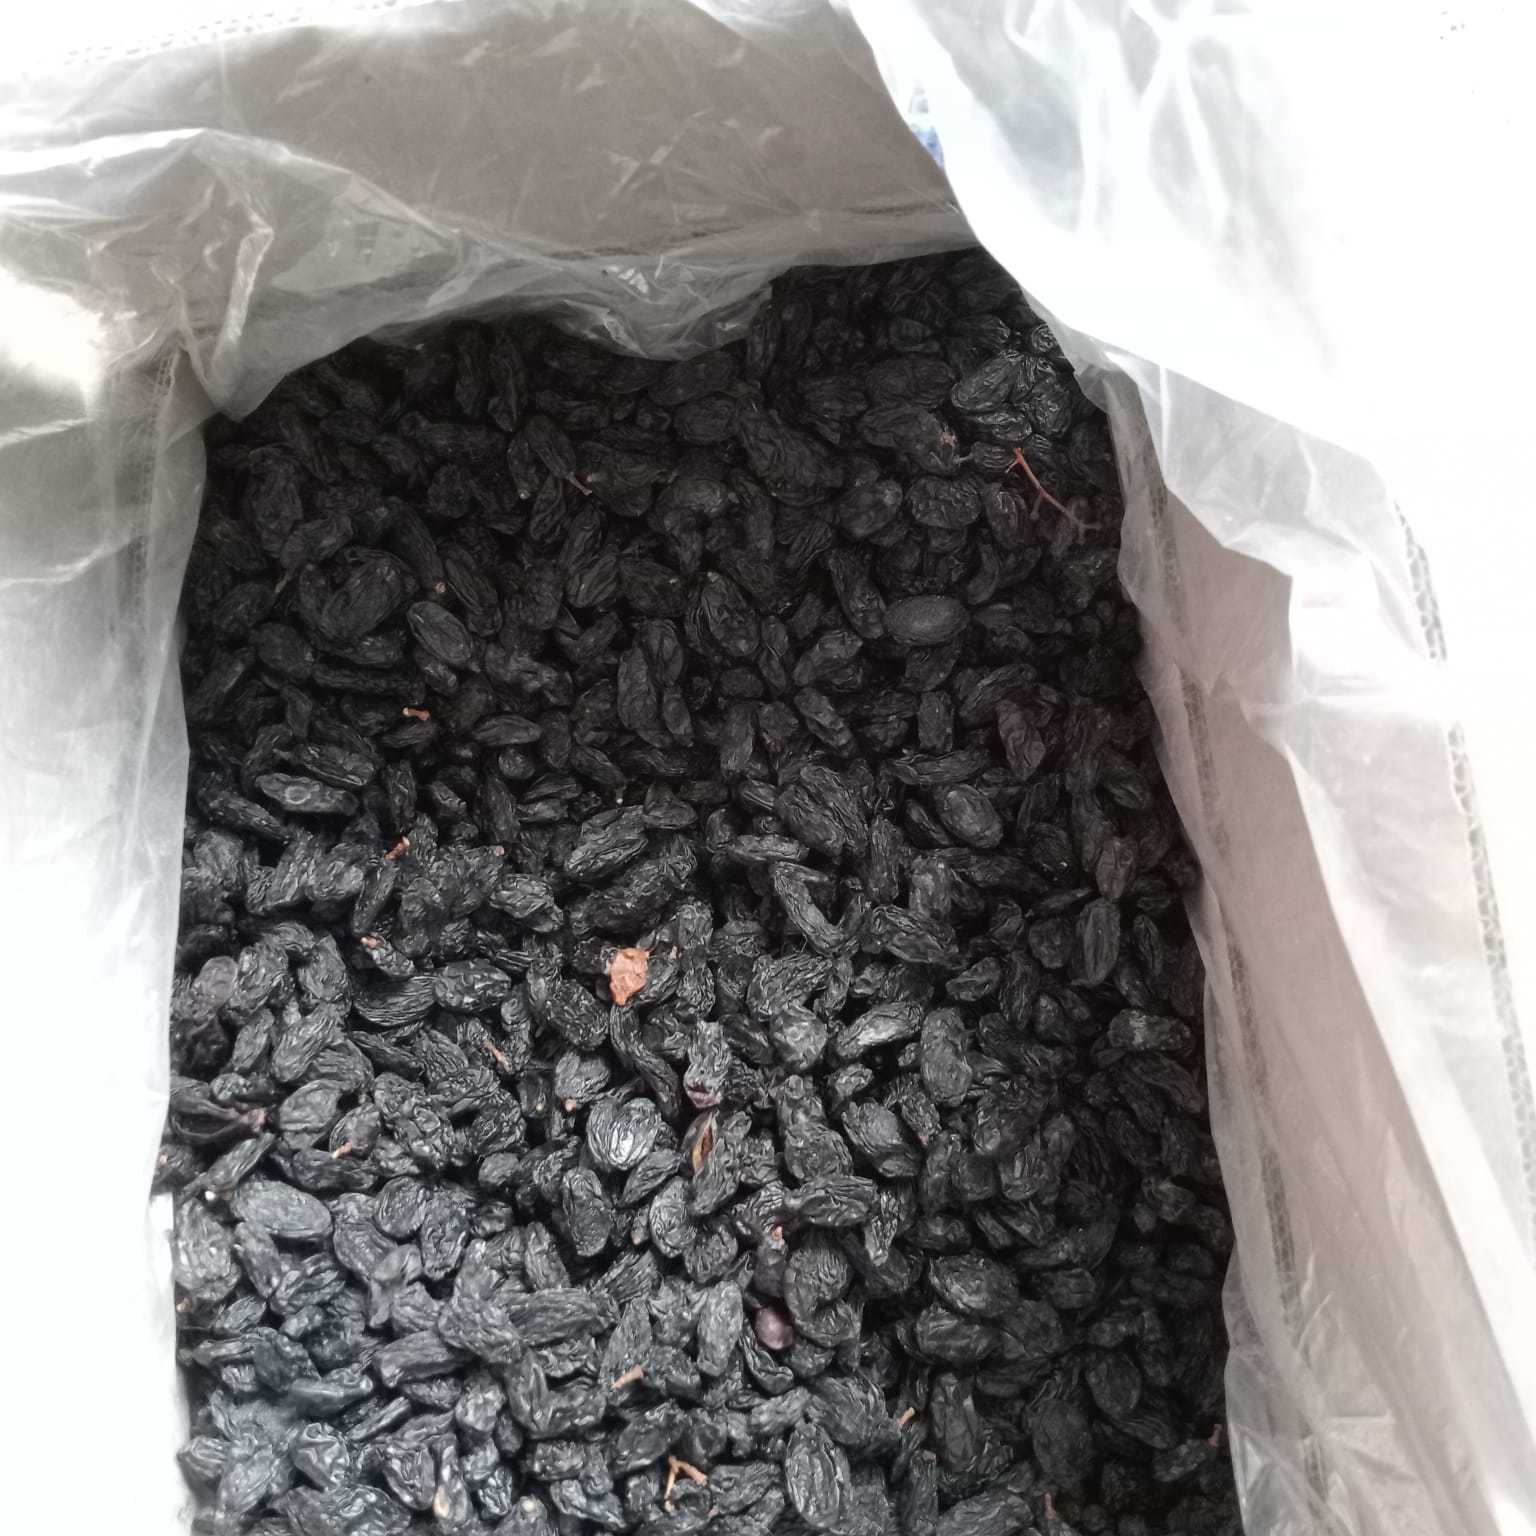 Dried  Black Raisins